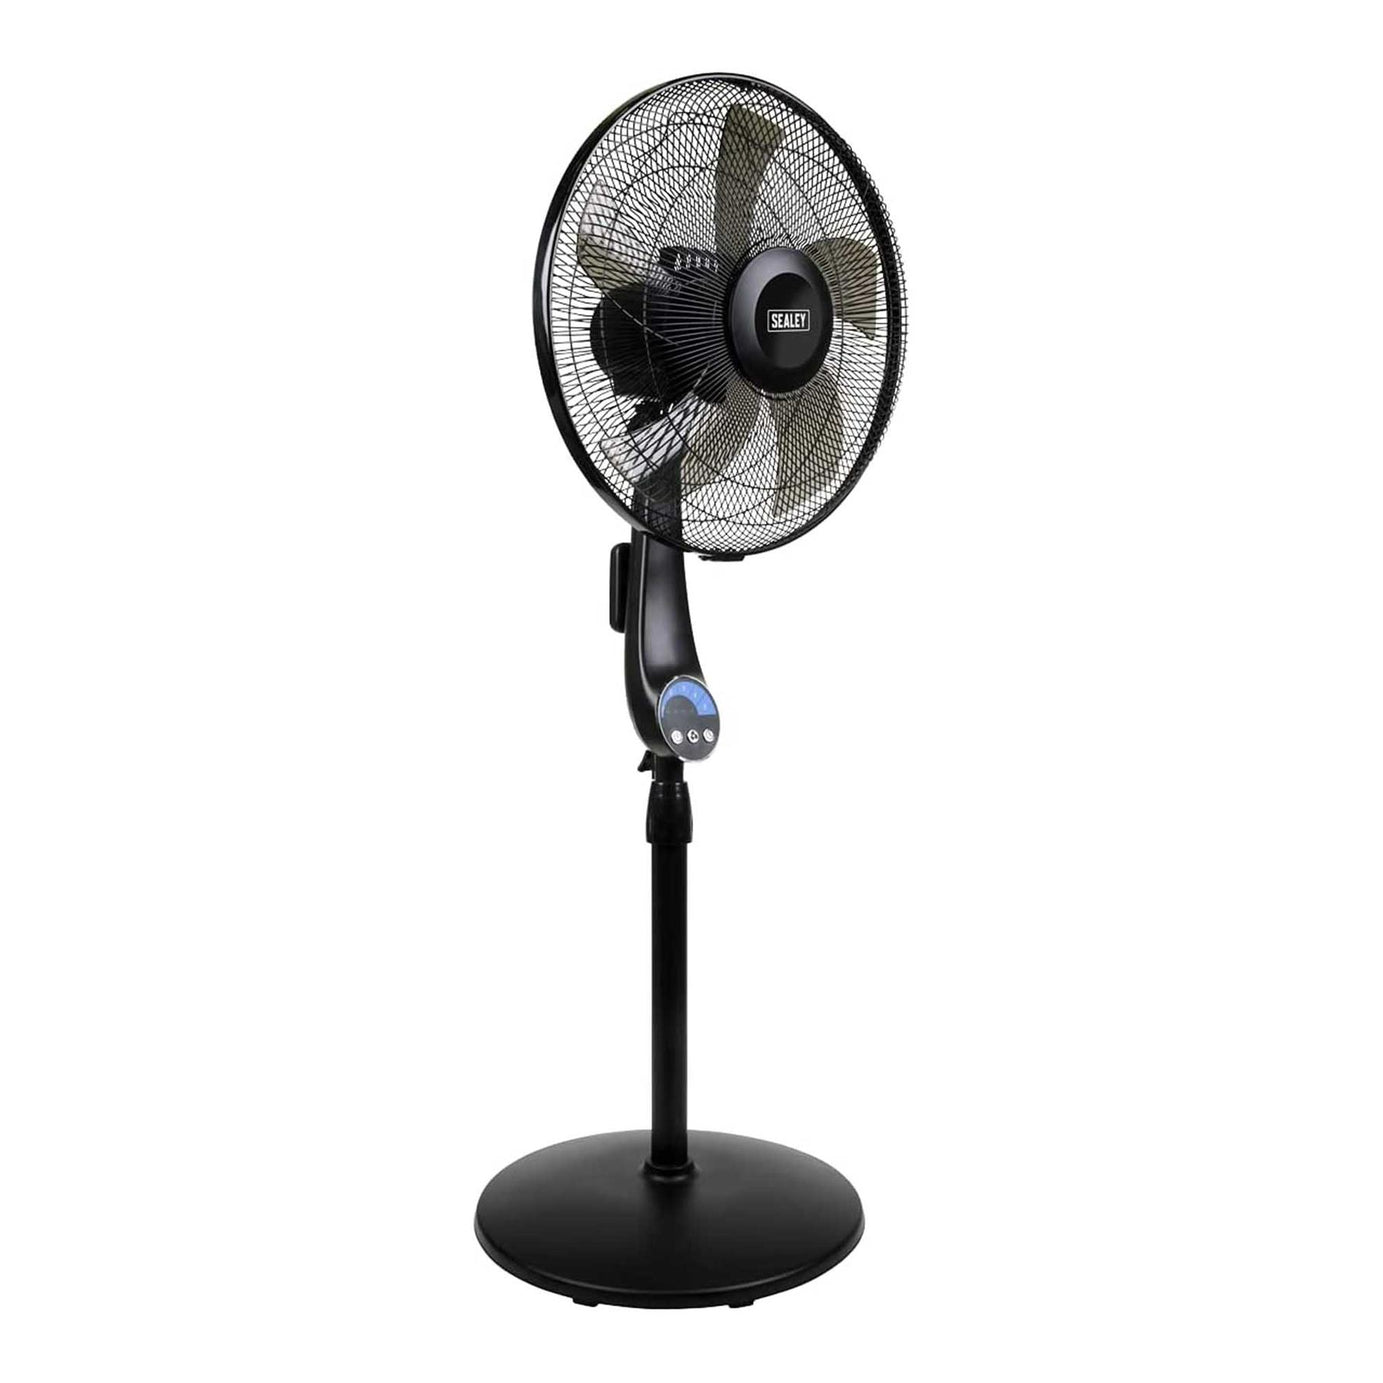 Sealey 16" Quiet High Performance Oscillating Pedestal Fan